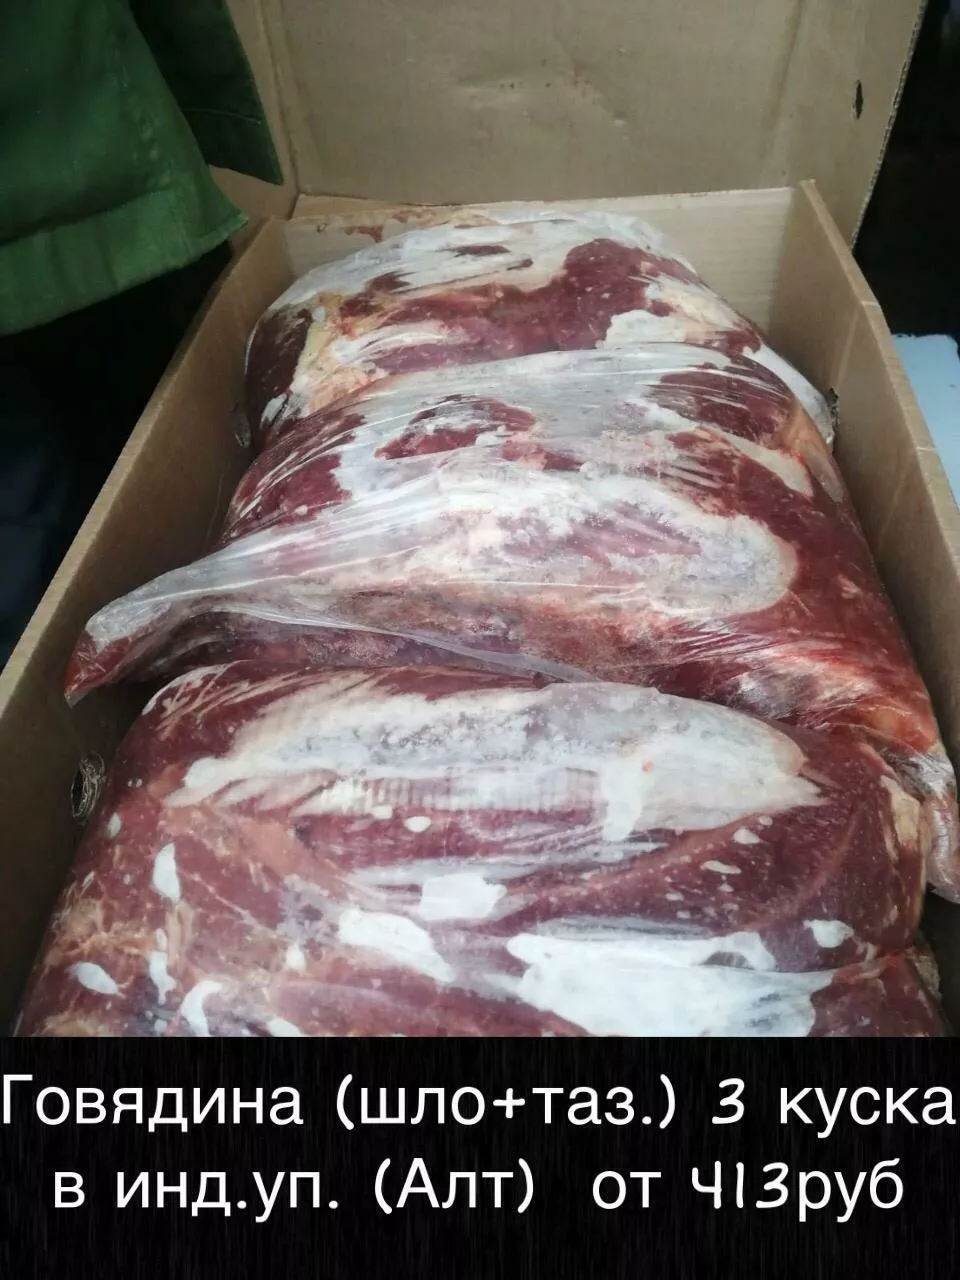 мясо оптом доставим до вашего региона в Братске 3